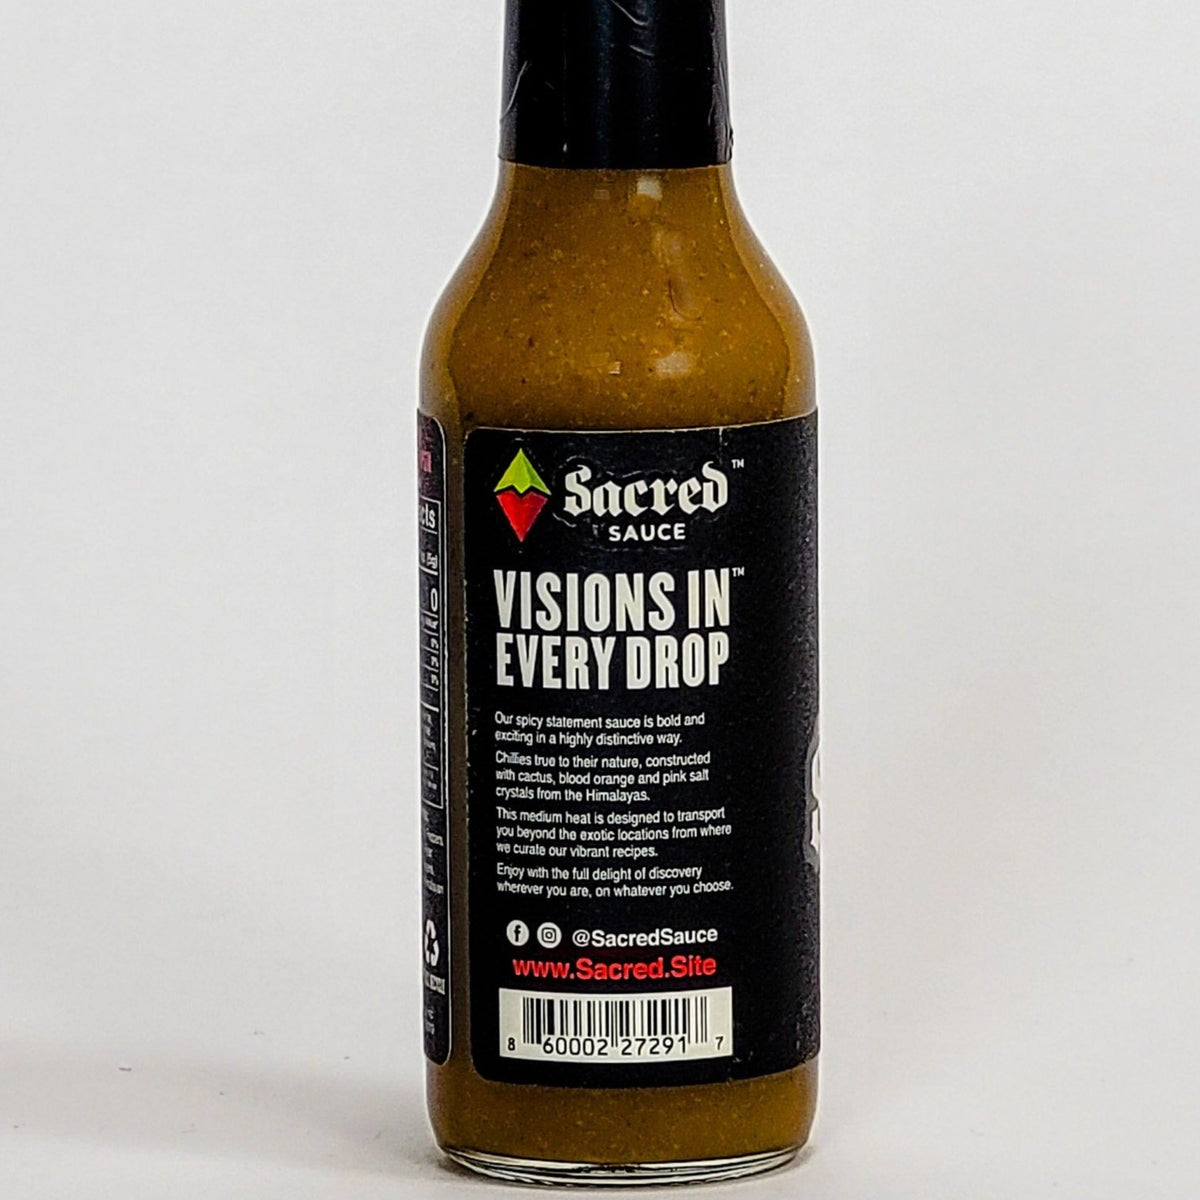 sacred sauce label information